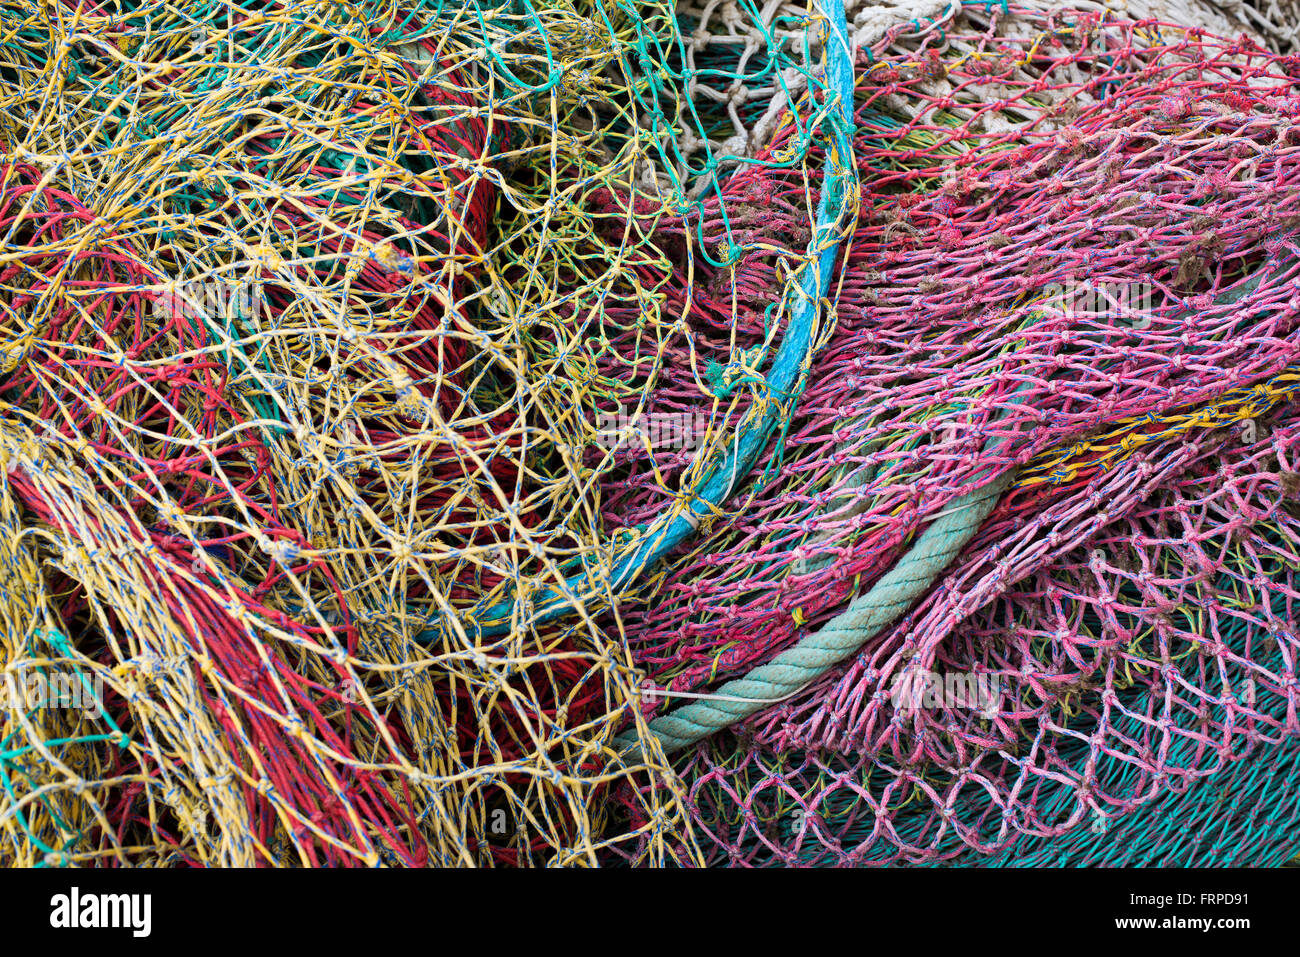 Las redes de pesca, Cala Ratjada, Mallorca, Islas Baleares, España Foto de stock